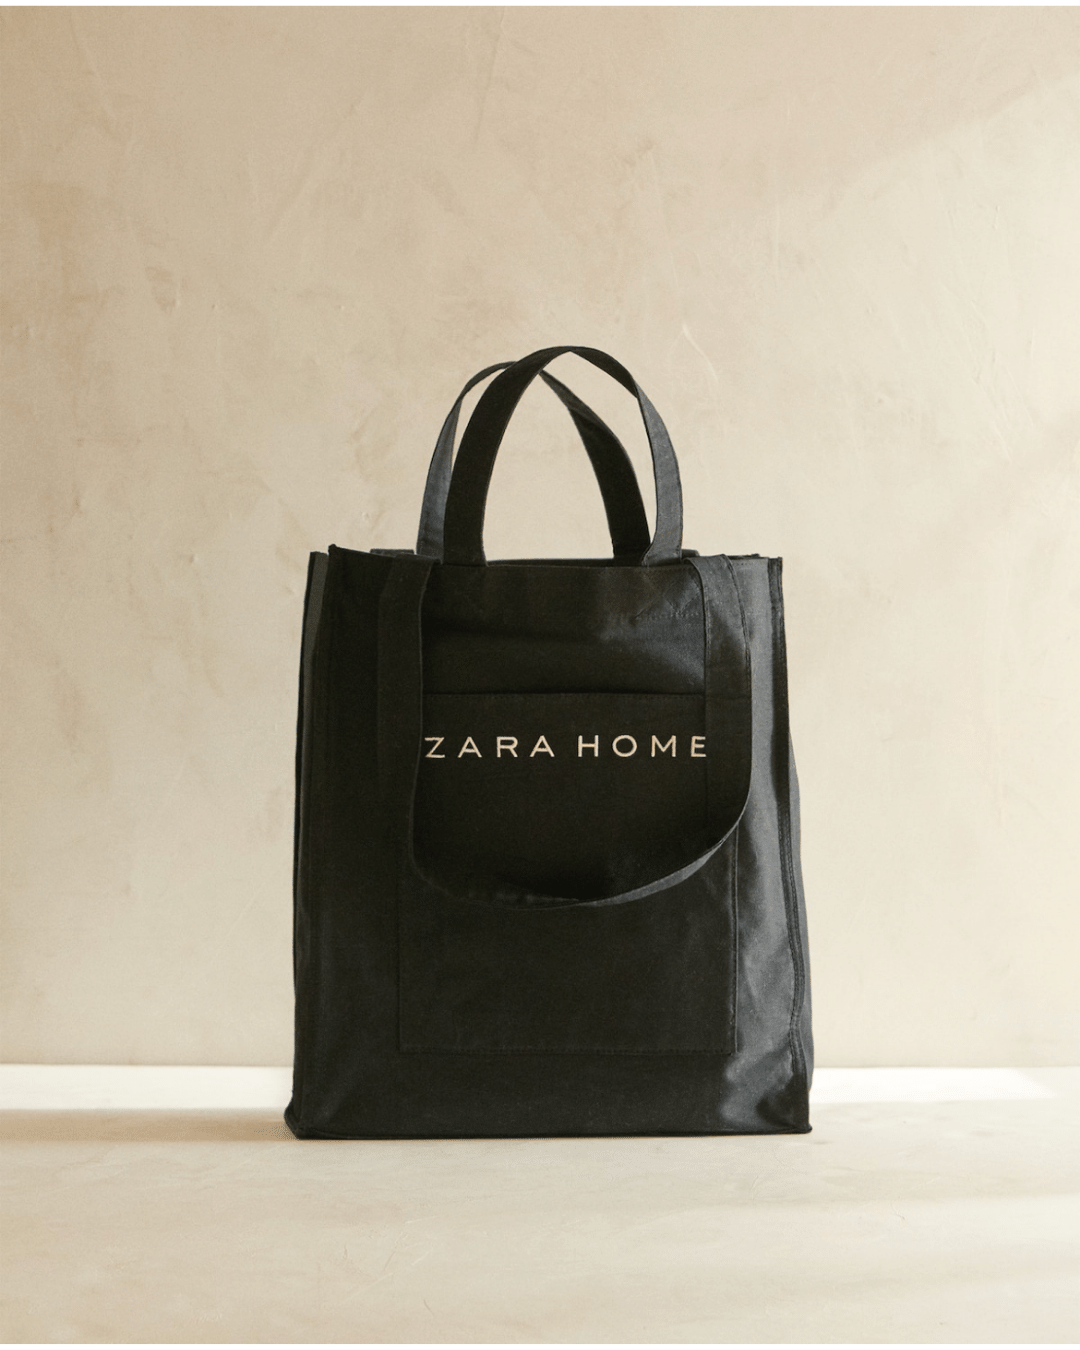 Zara_Home_Malaysia_Tote_Bag